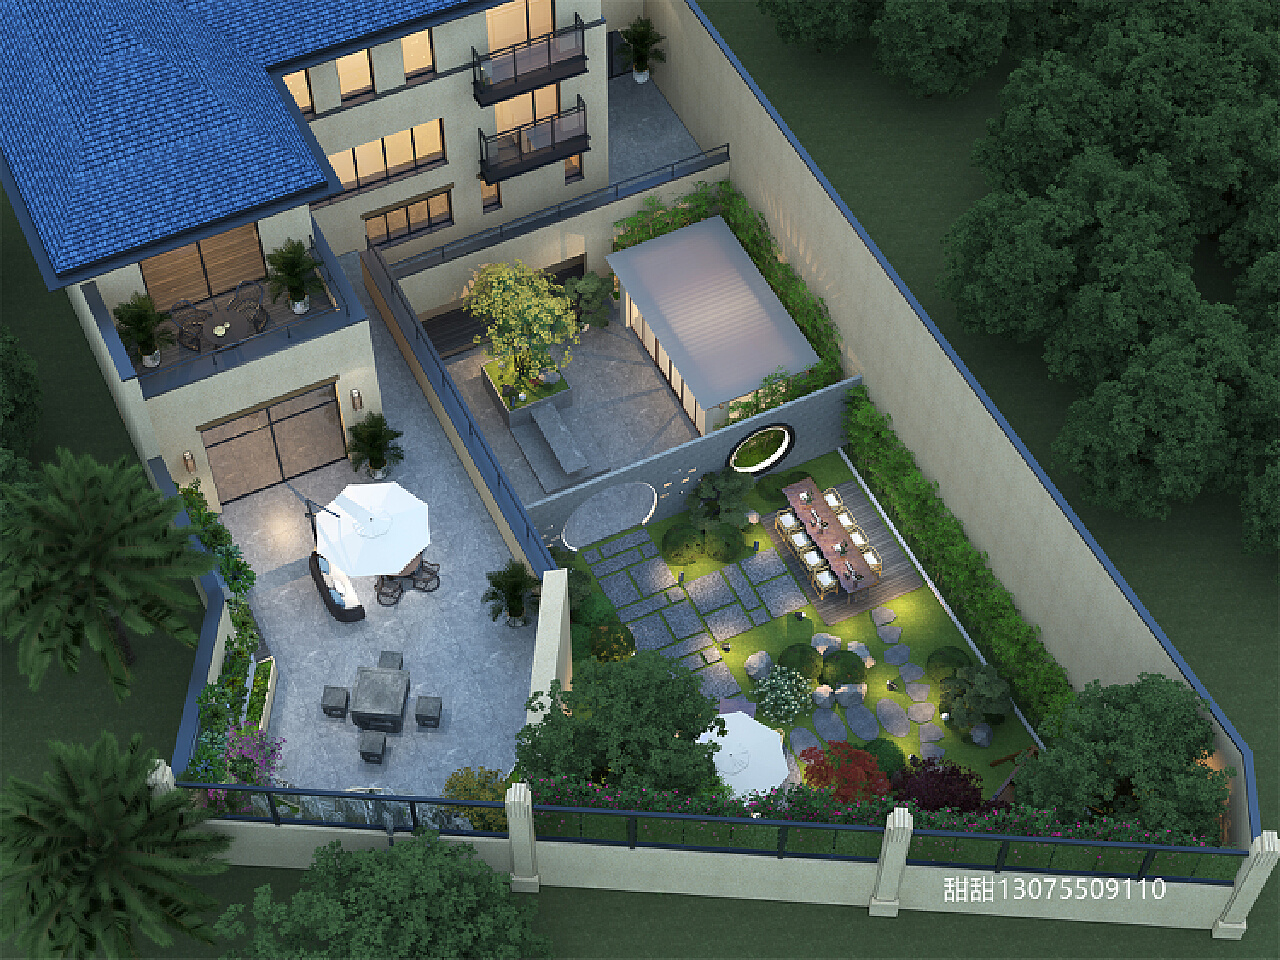 新中式庭院花园鸟瞰-3D模型-模匠网,3D模型下载,免费模型下载,国外模型下载